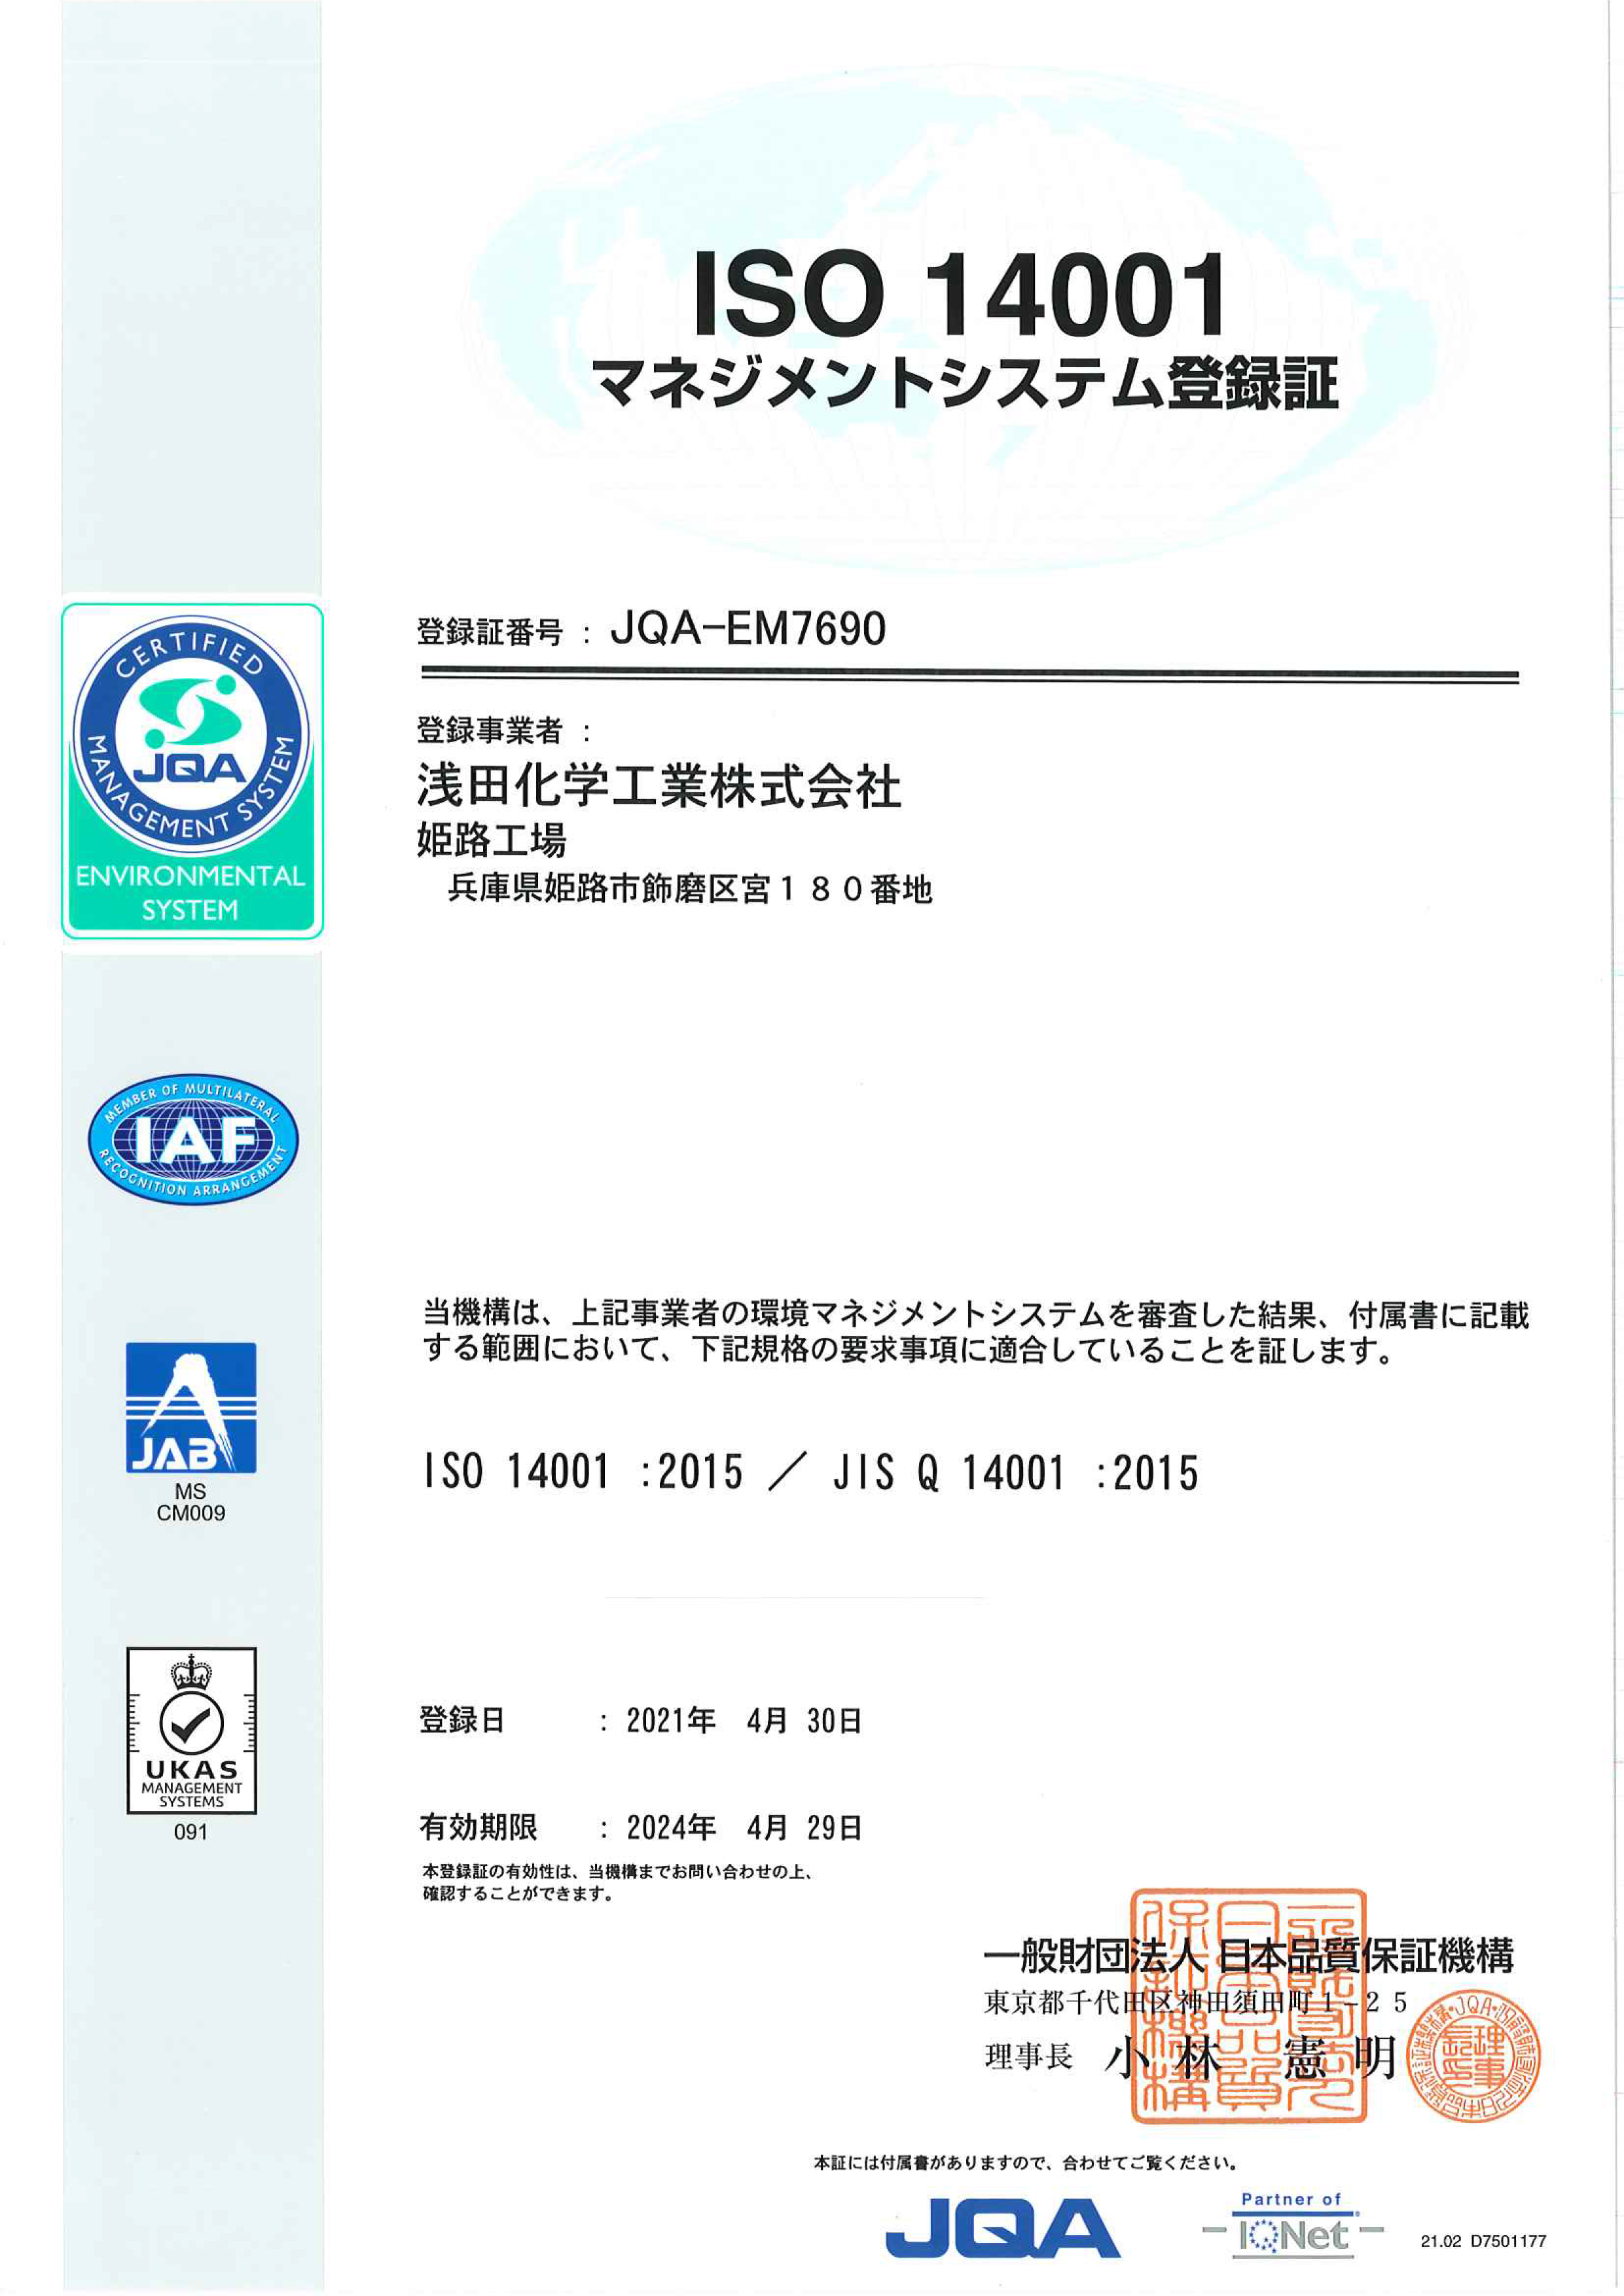 姫路工場においてISO14001(環境)取得